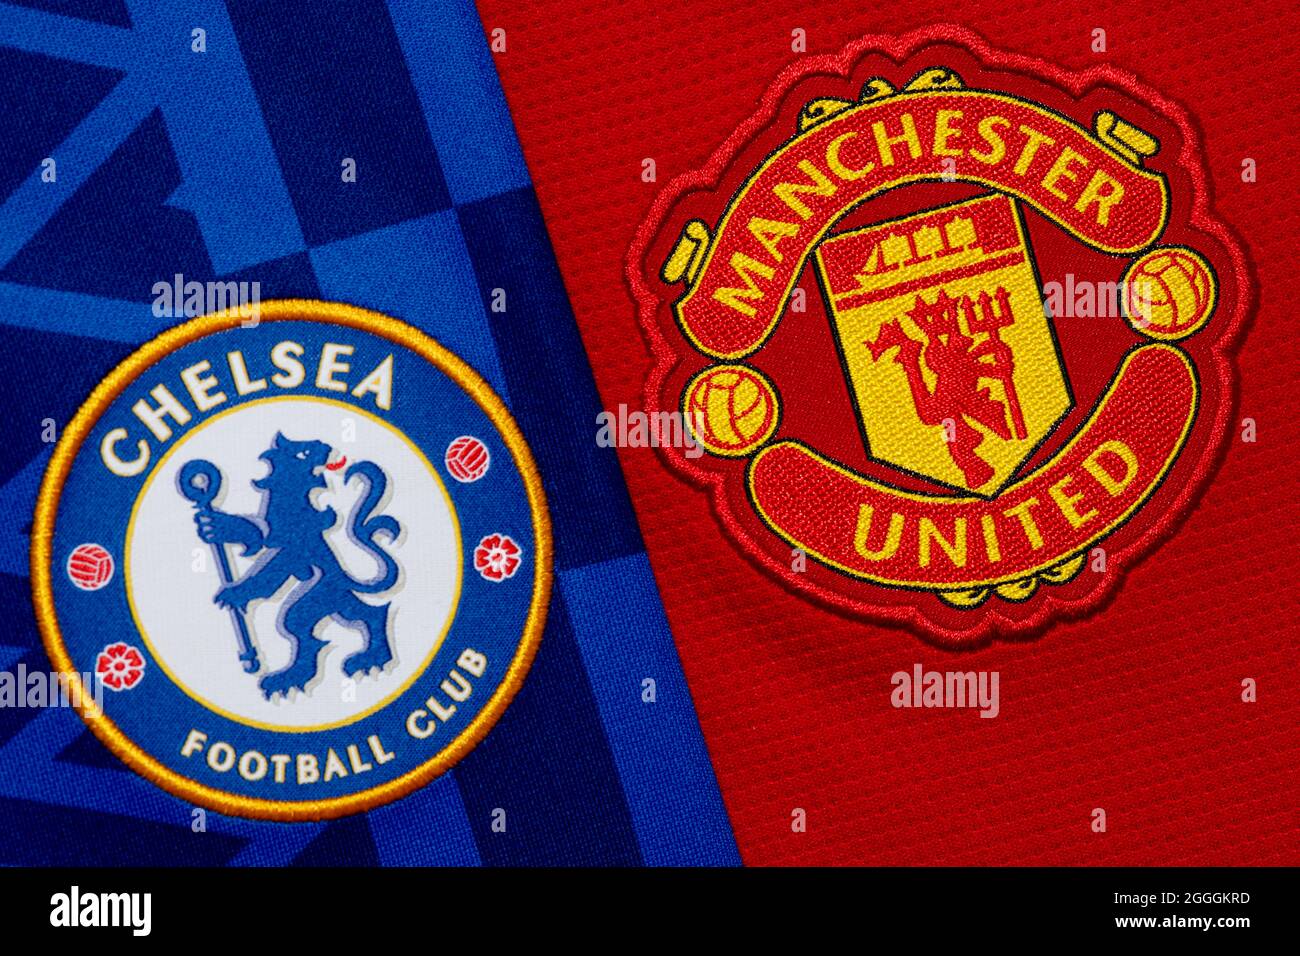 Nahaufnahme des Vereinswappens von Manchester United & Chelsea. Stockfoto